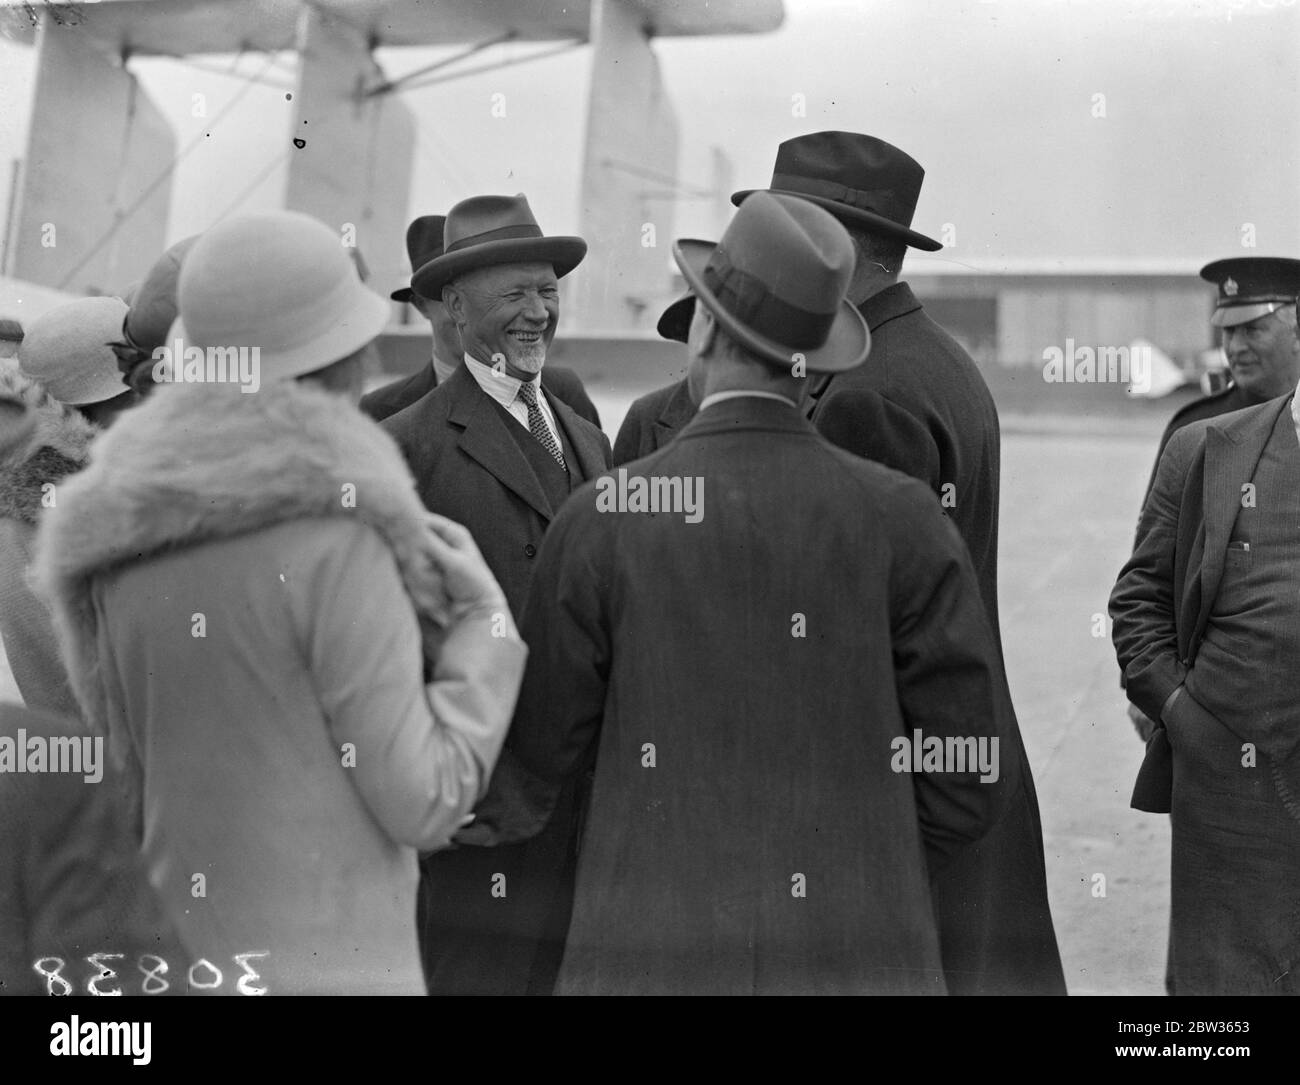 Le général Smuts arrive par avion pour la Conférence économique mondiale . Le général Smuts , chef de la délégation sud-africaine à la Conférence économique mondiale , est arrivé à l'aérodrome de Croydon après avoir effectué le vol de l'ensemble de la jounee depuis le Cap . Photos ; le général Smuts souriant avec joie lorsqu'il a été accueilli à son arrivée à l'aérodrome de Croydon . 11 juin 1933 Banque D'Images